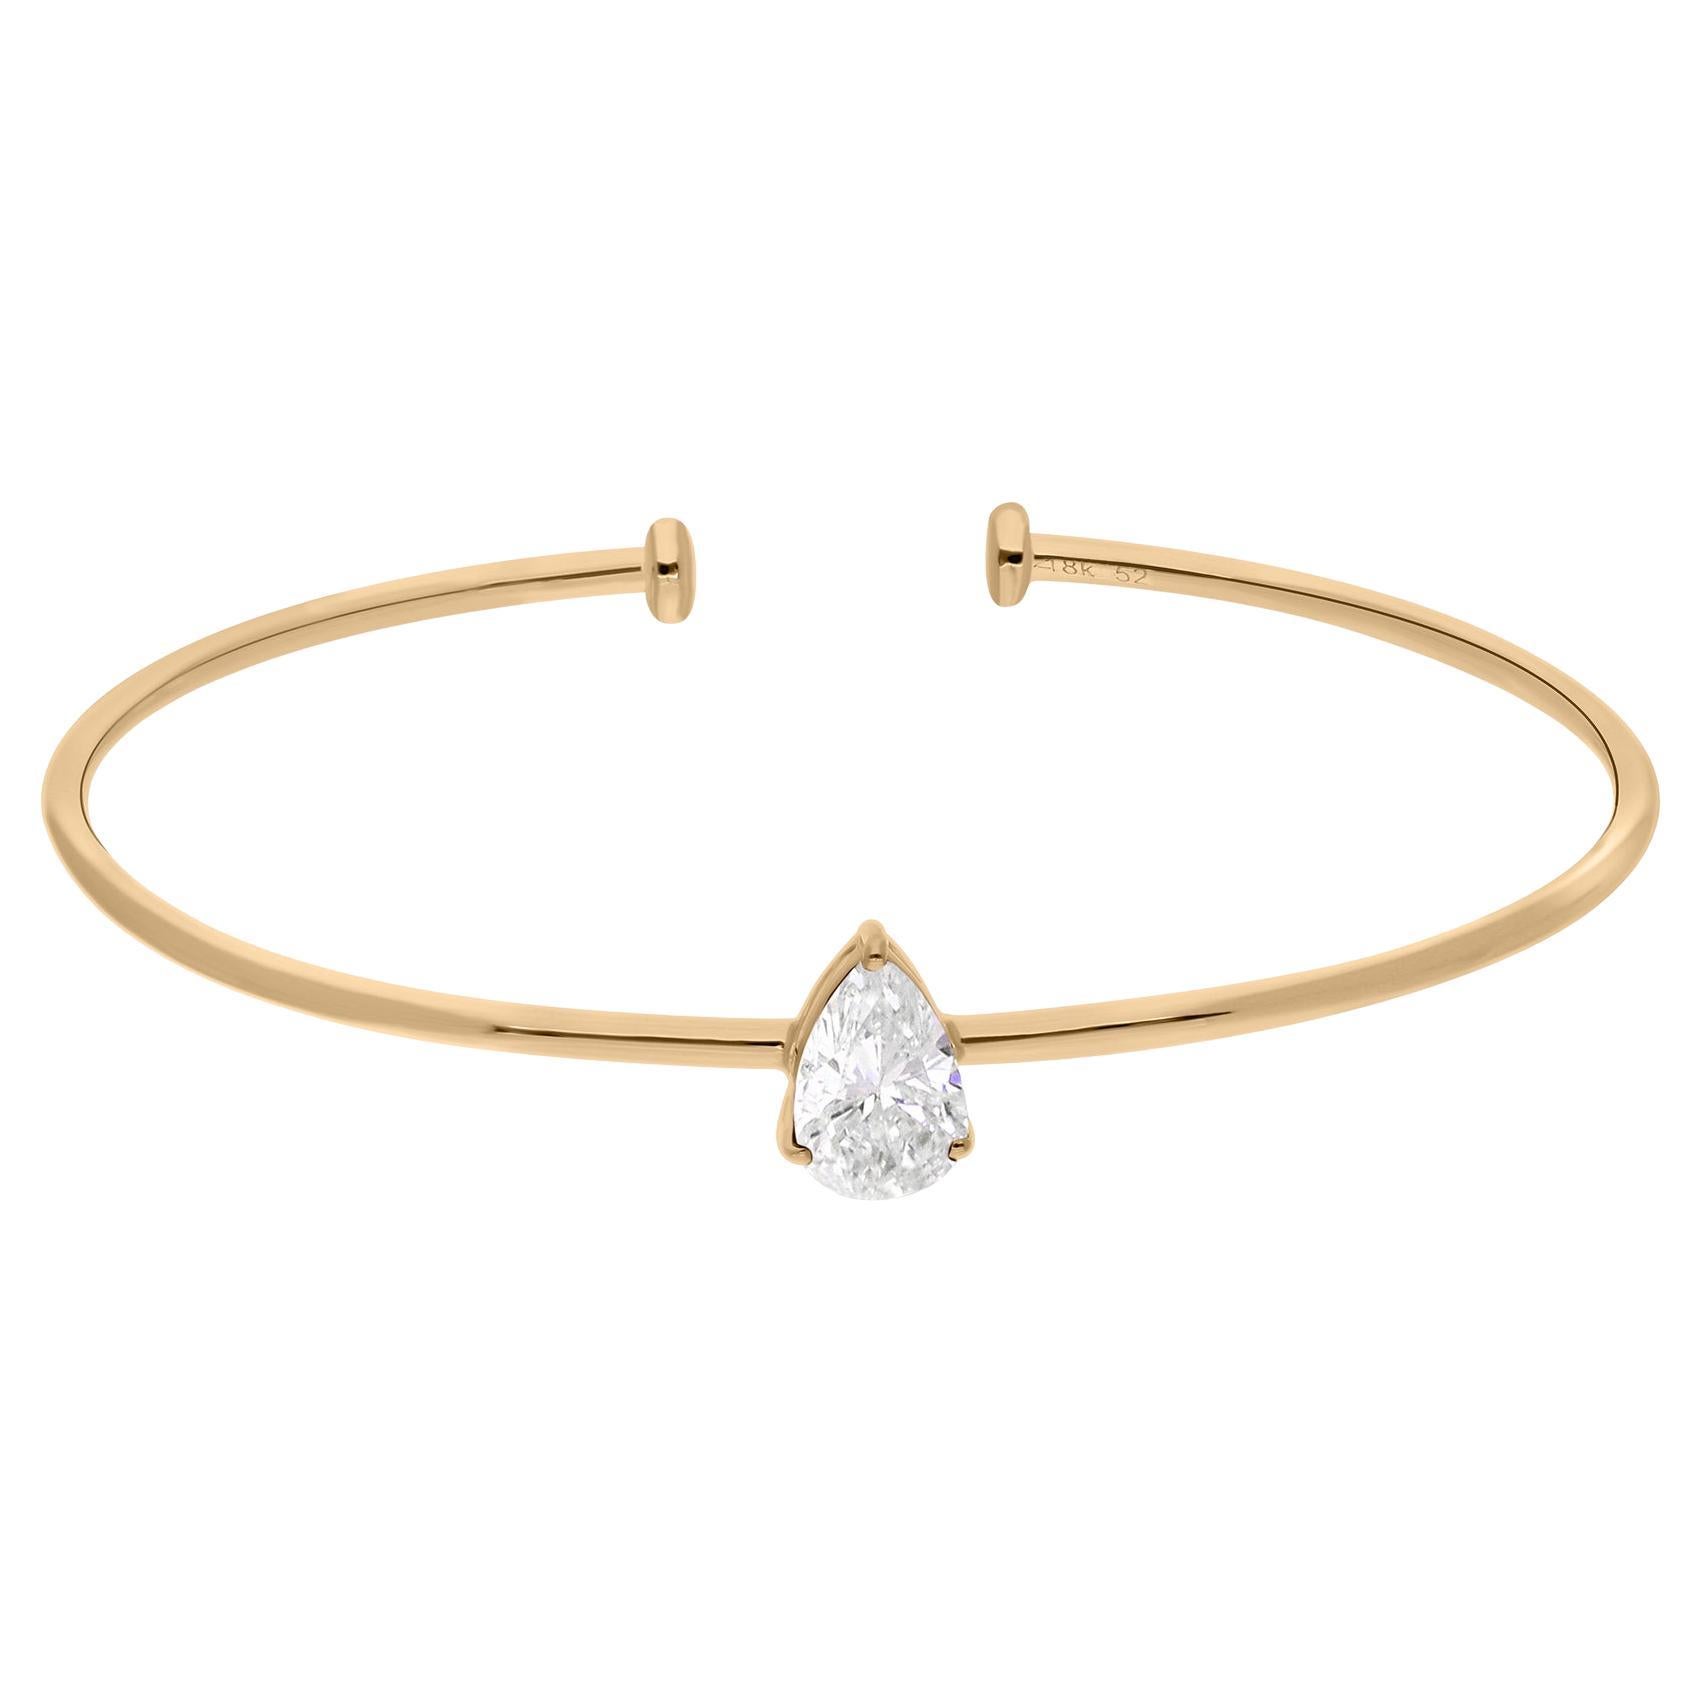 Bracelet manchette jonc fin en or jaune 14 carats avec diamants solitaires naturels en poire